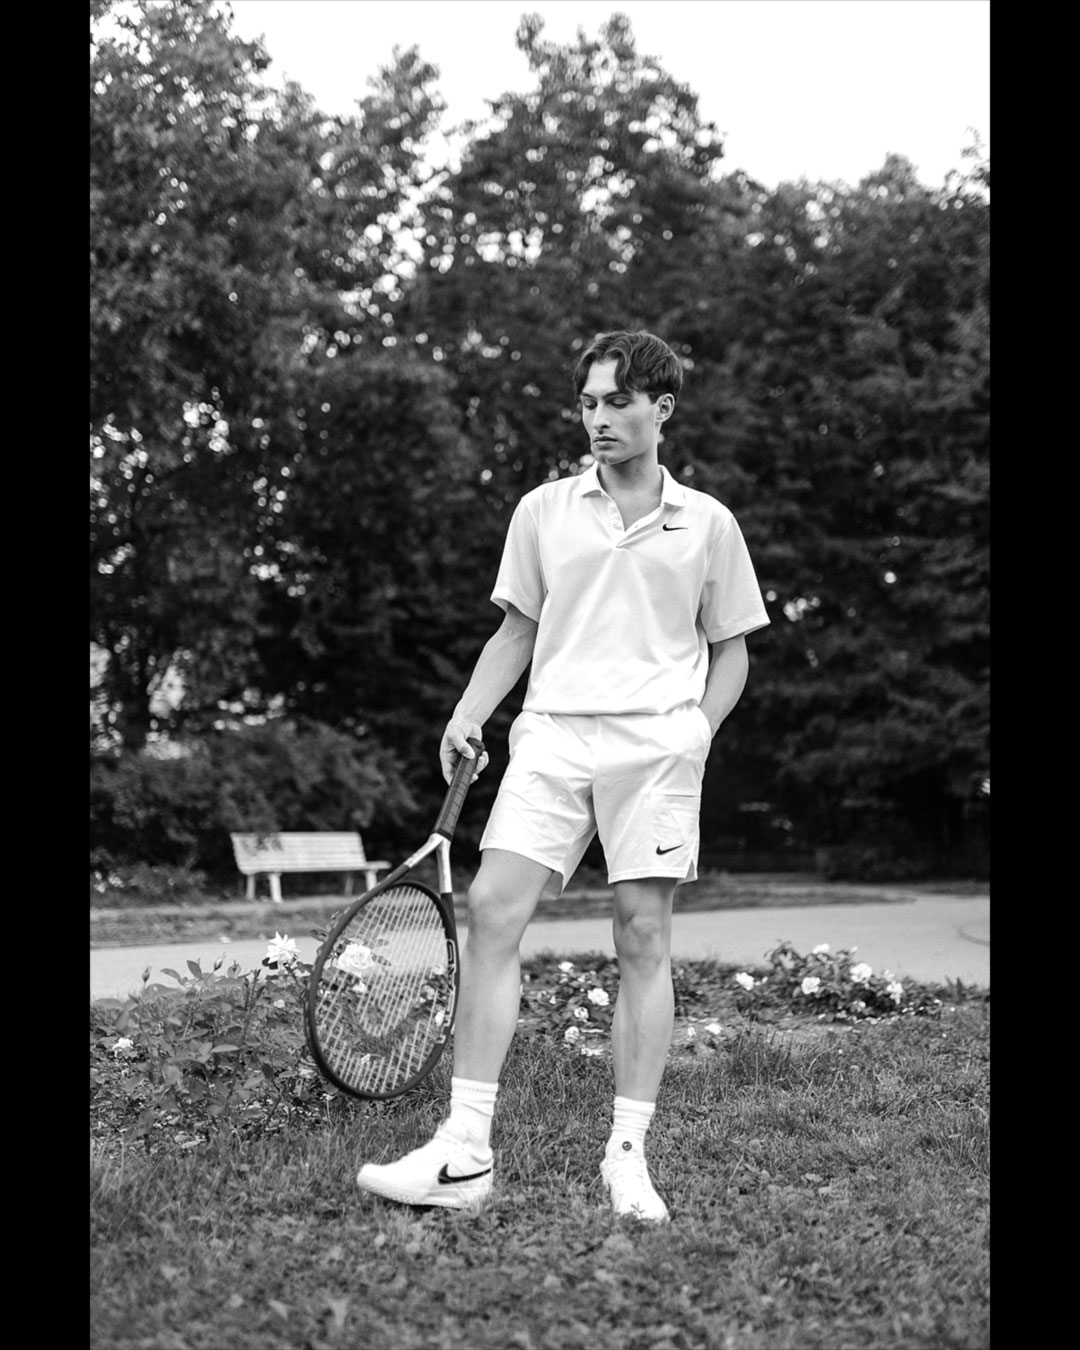 Tennis-Outfit für Männer in Schwarz-Weiß.